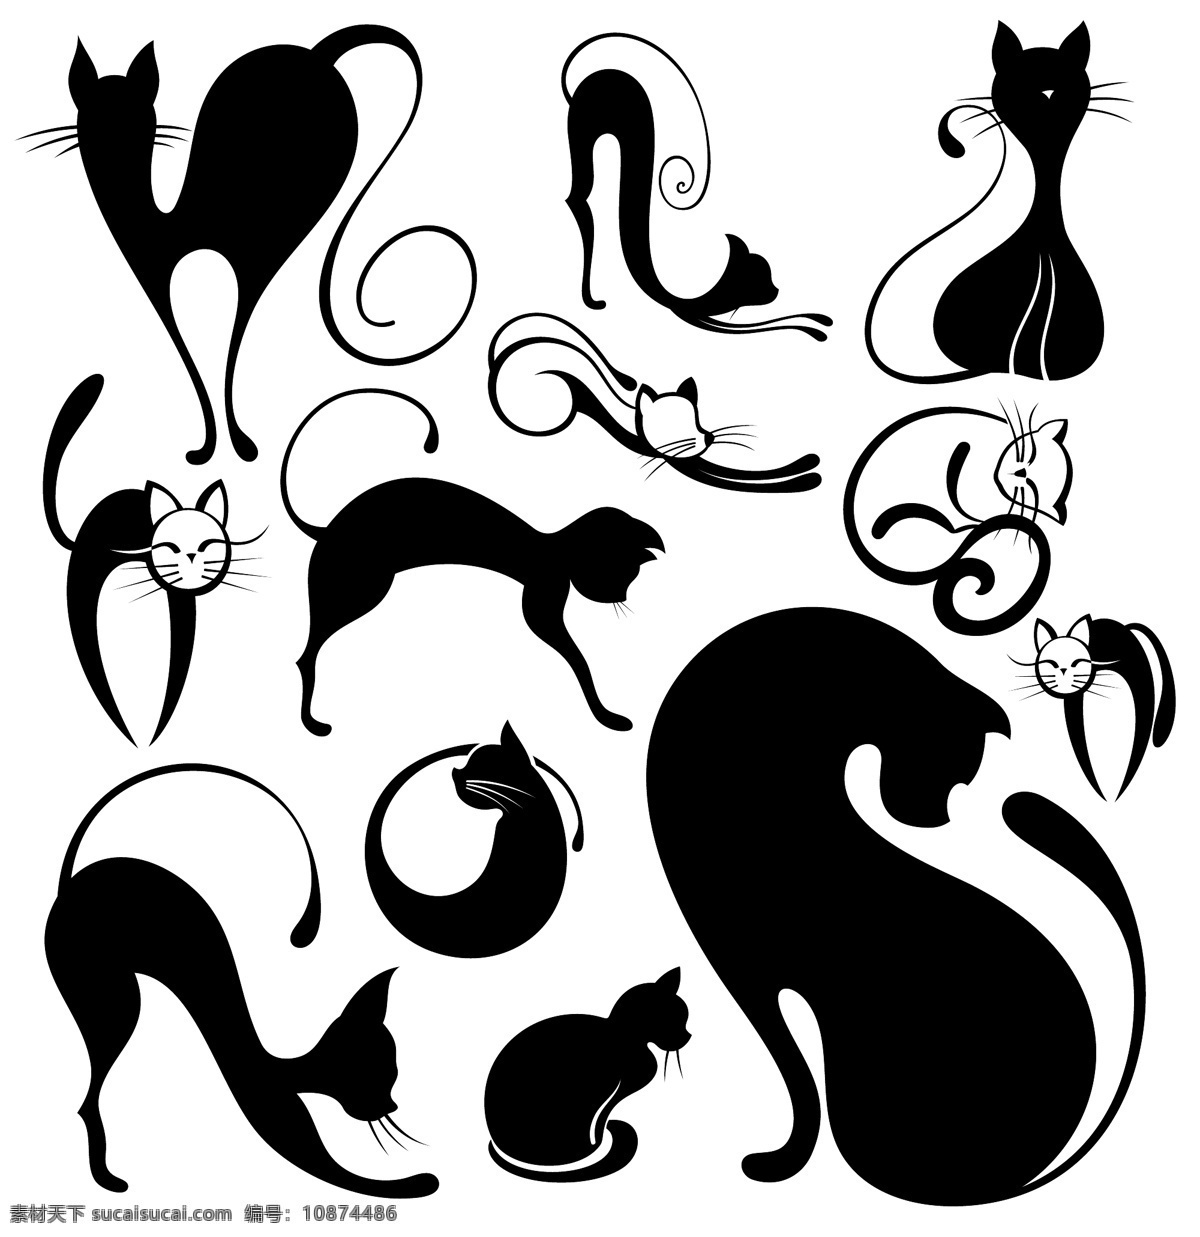 动物剪影 可爱 动物 剪影 矢量 宠物 猫咪 猫 生物世界 家禽家畜